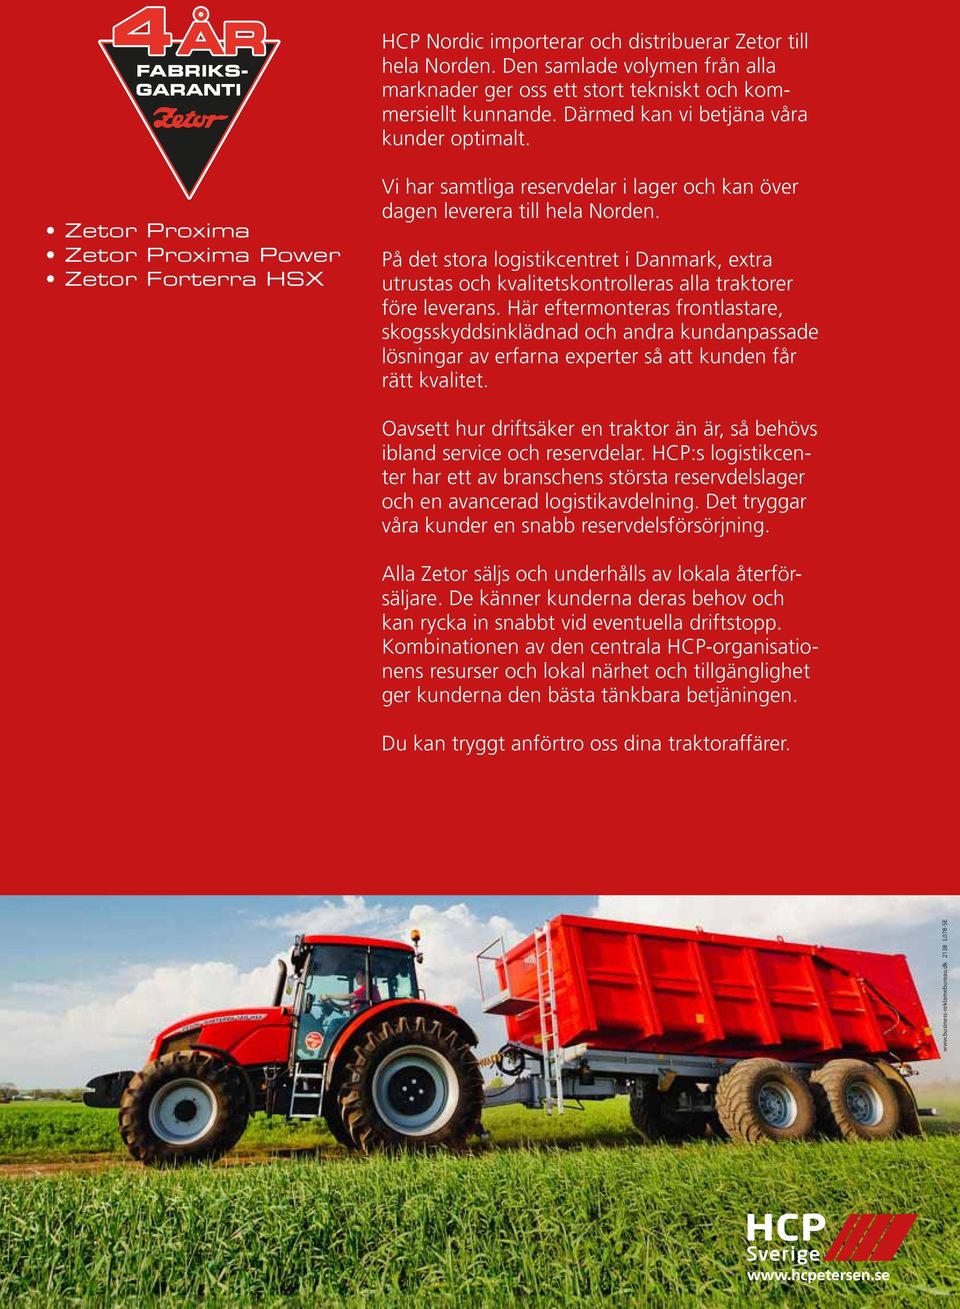 På det stora logistikcentret i Danmark, extra utrustas och kvalitetskontrolleras alla traktorer före leverans.